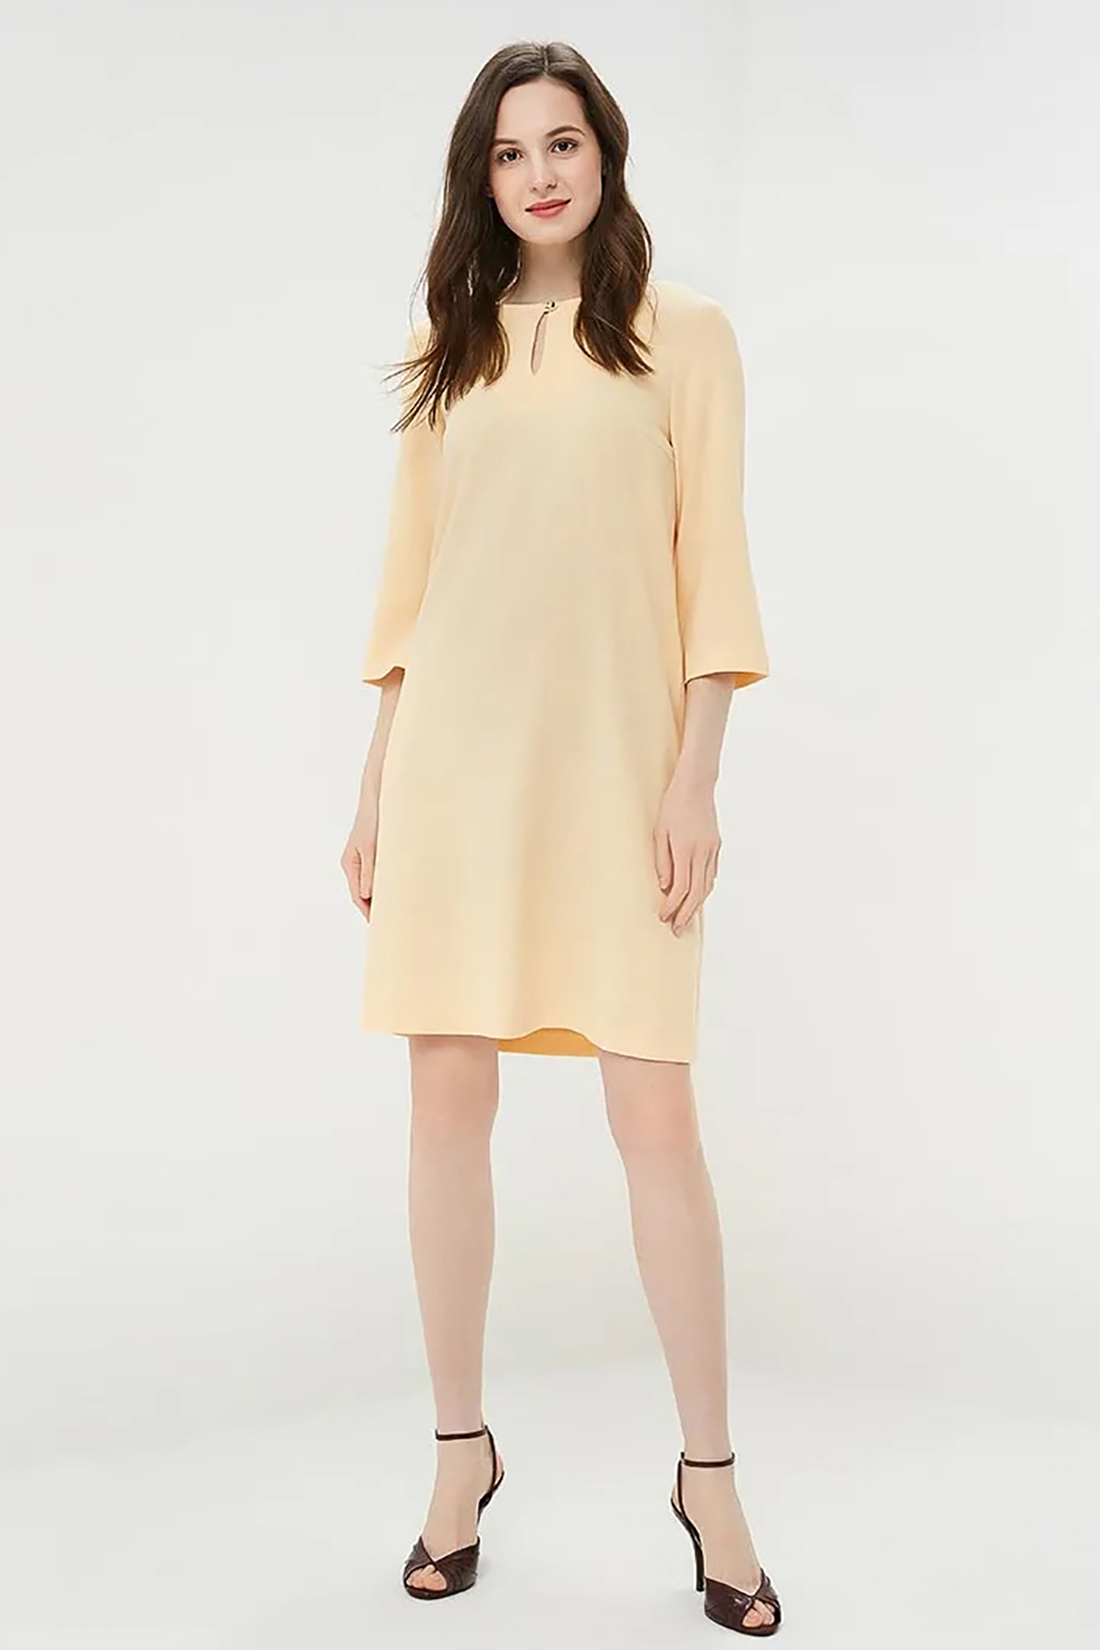 Платье с вырезом-каплей (арт. baon B459011), размер L, цвет желтый Платье с вырезом-каплей (арт. baon B459011) - фото 1